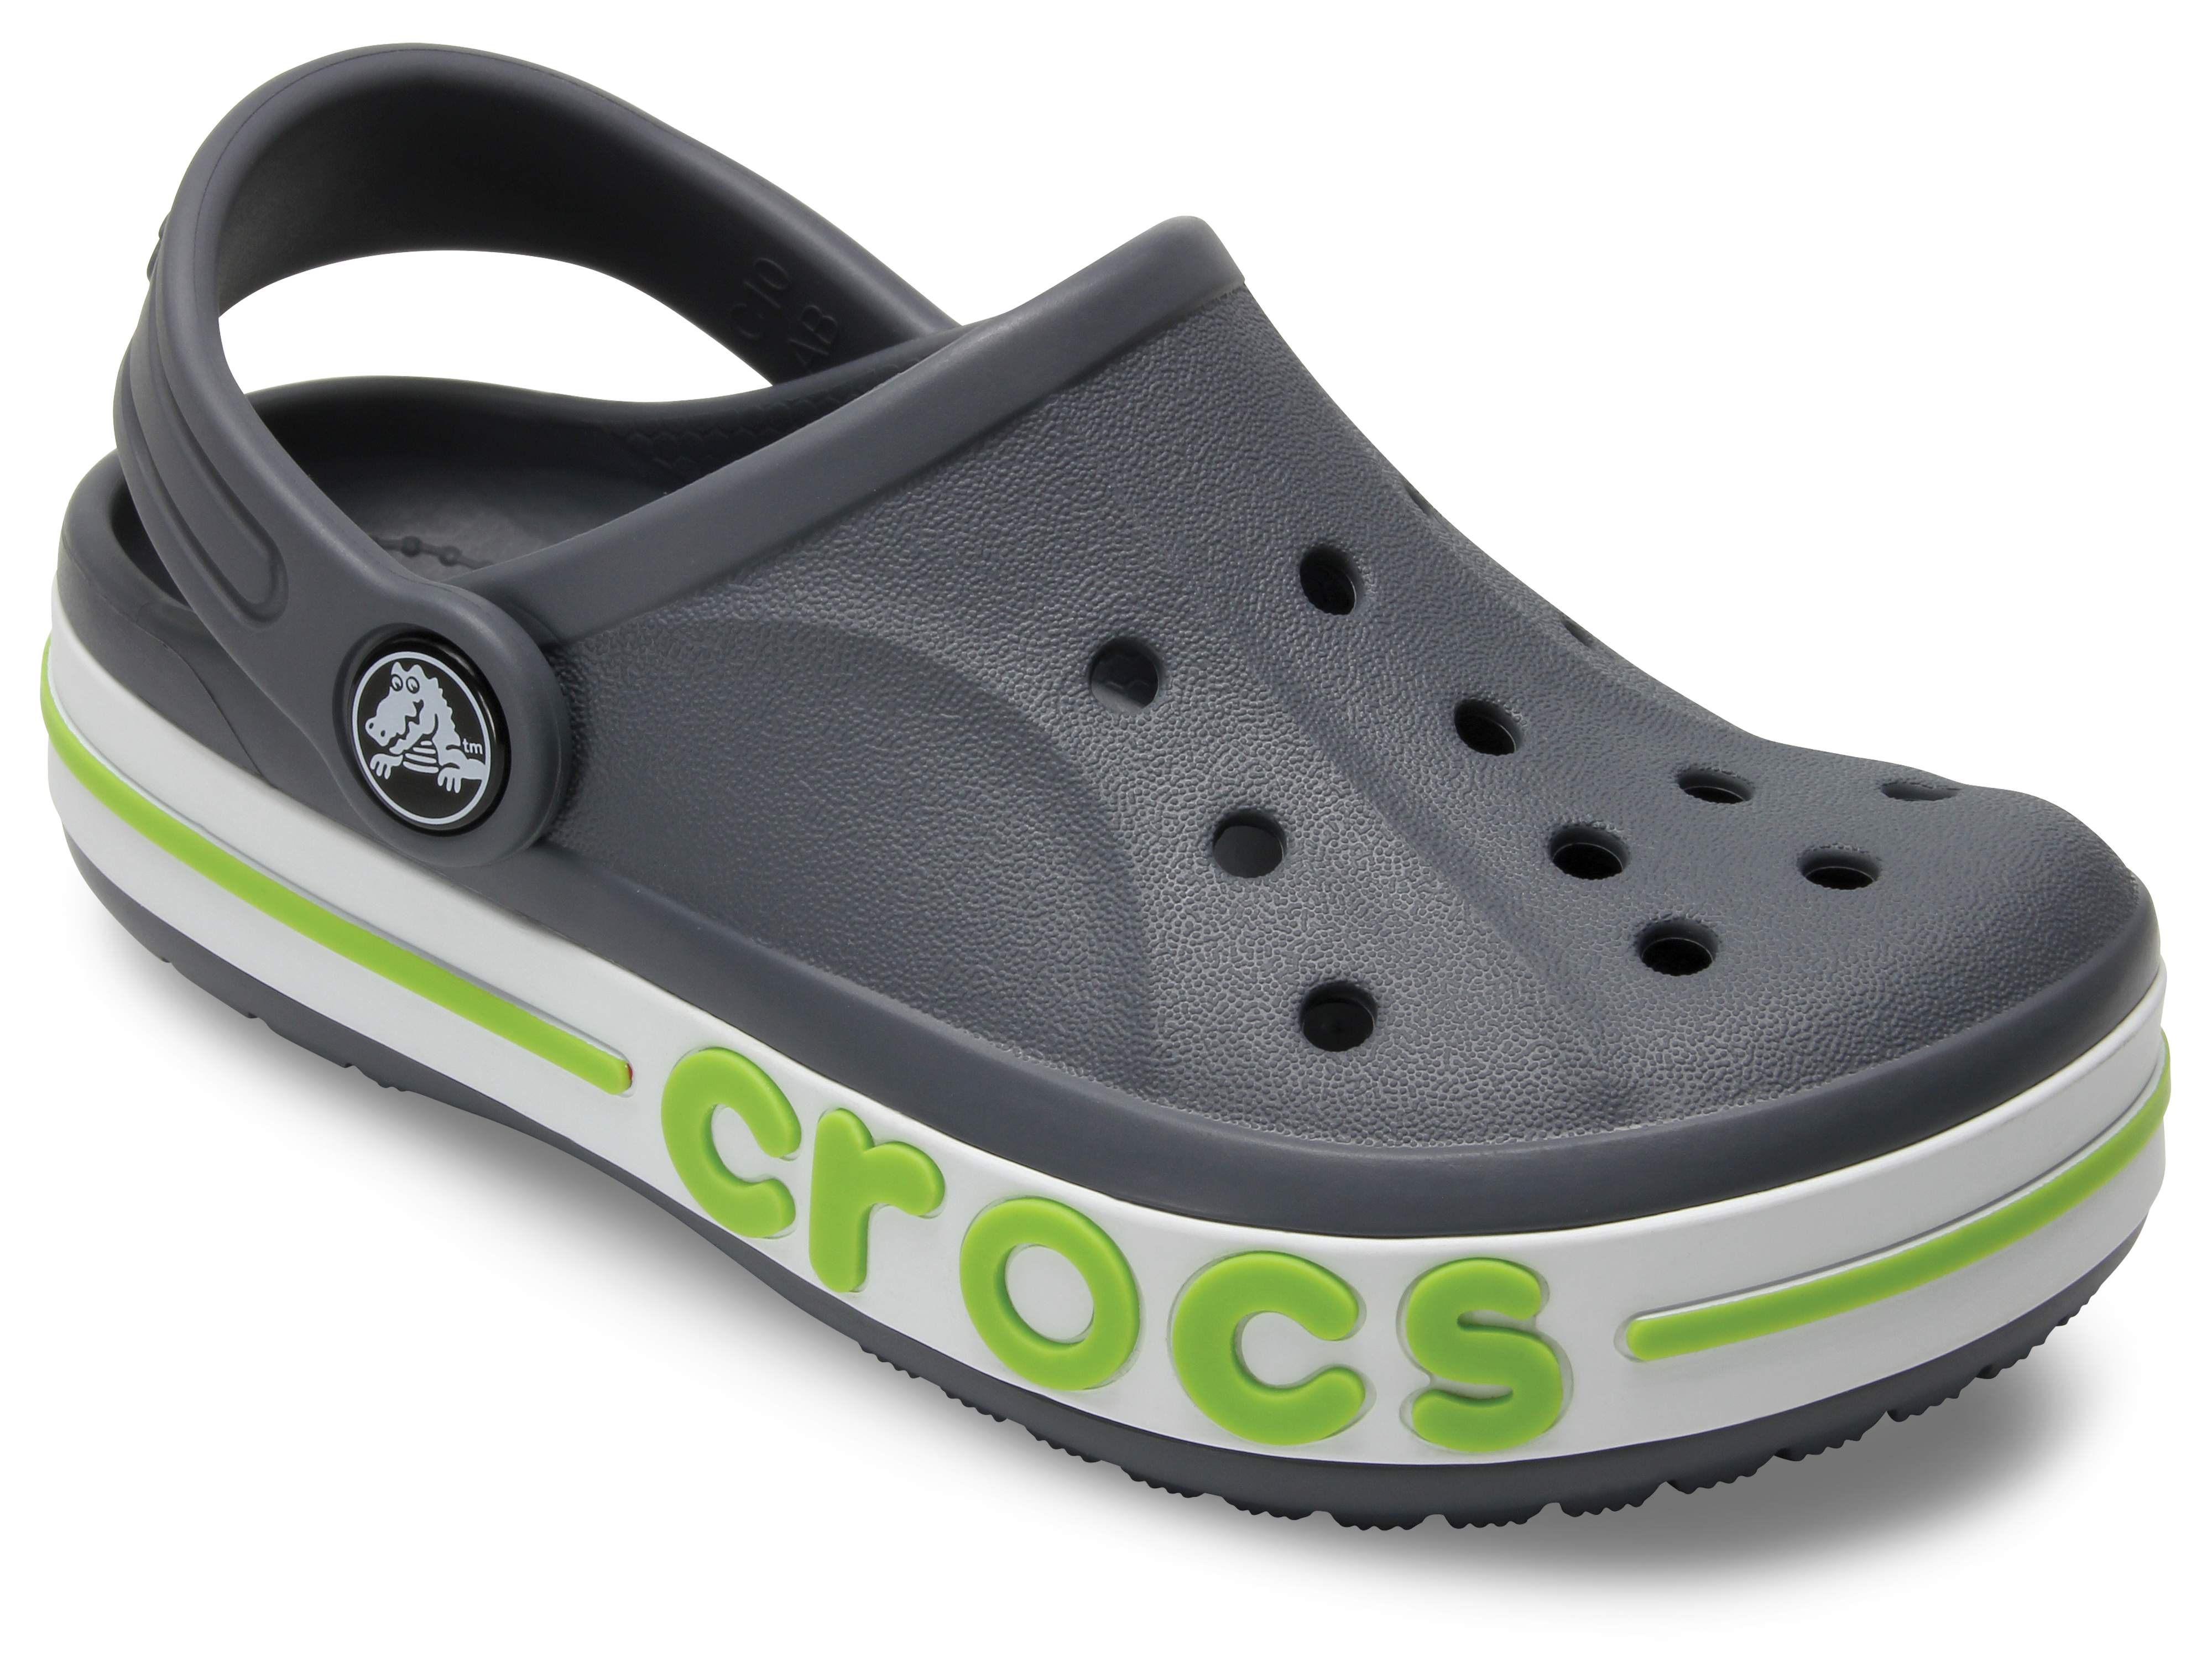 black crocs for kids